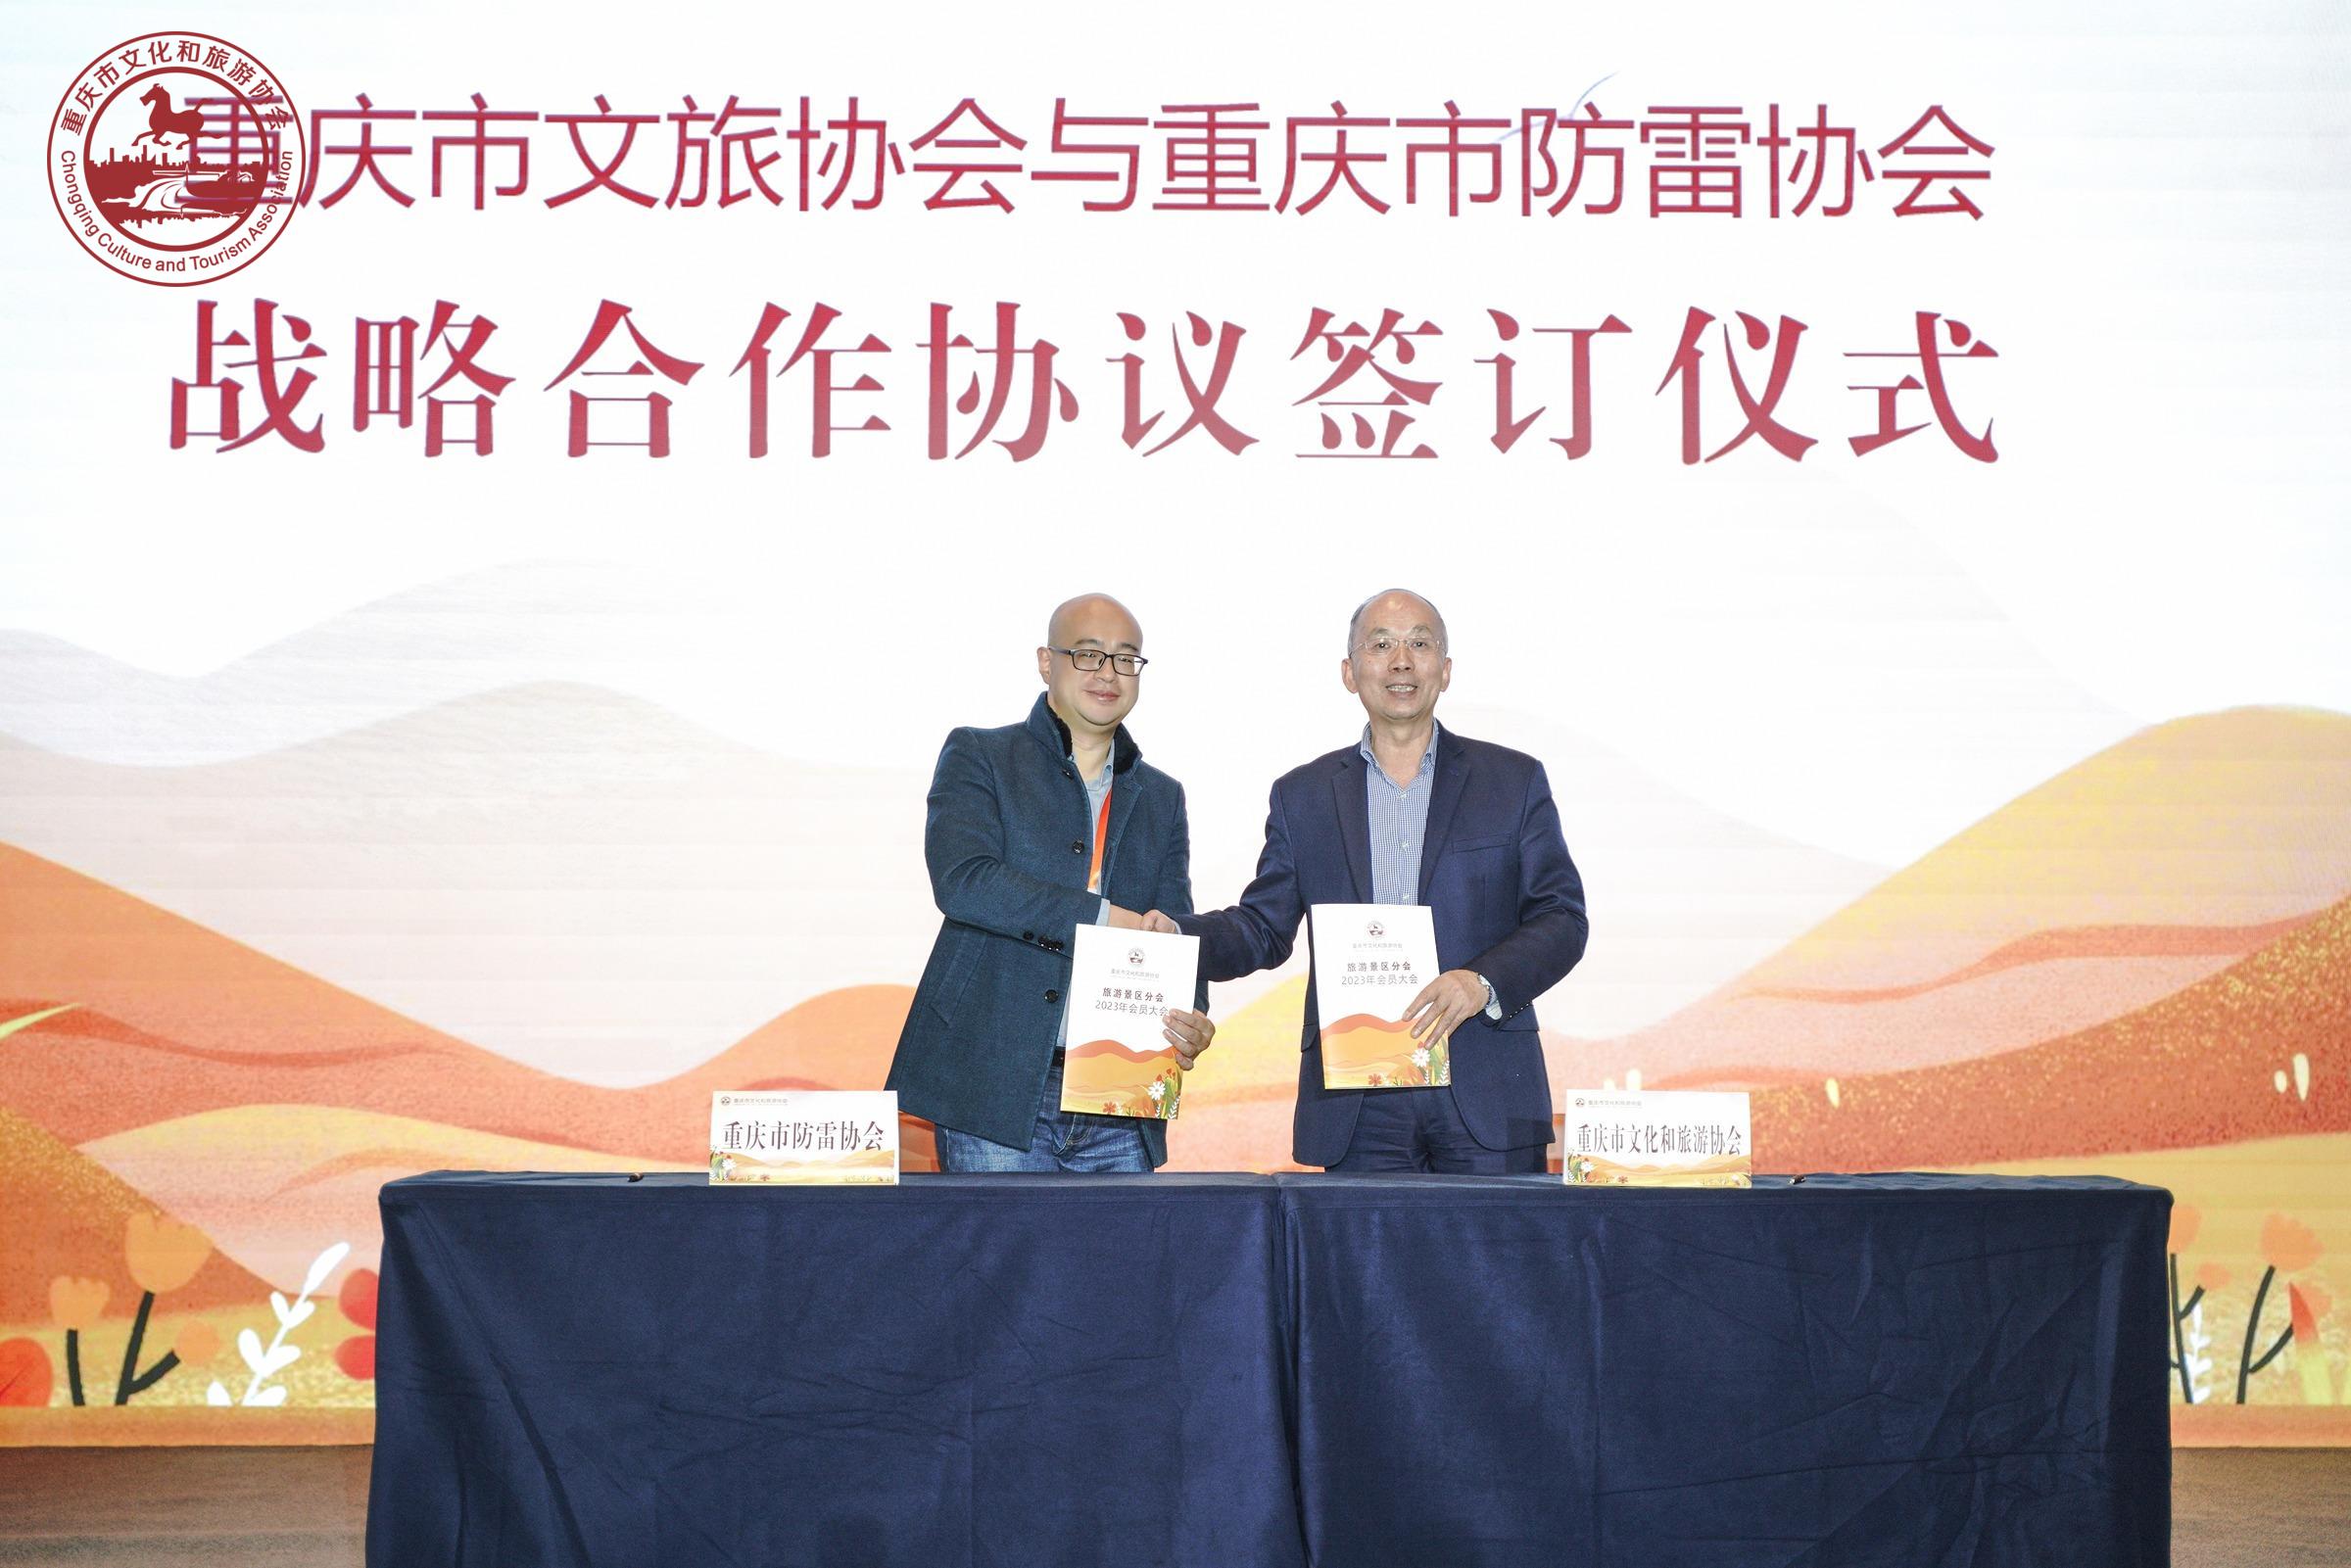 重庆市防雷协会与重庆市文旅协会签订战略合作协议